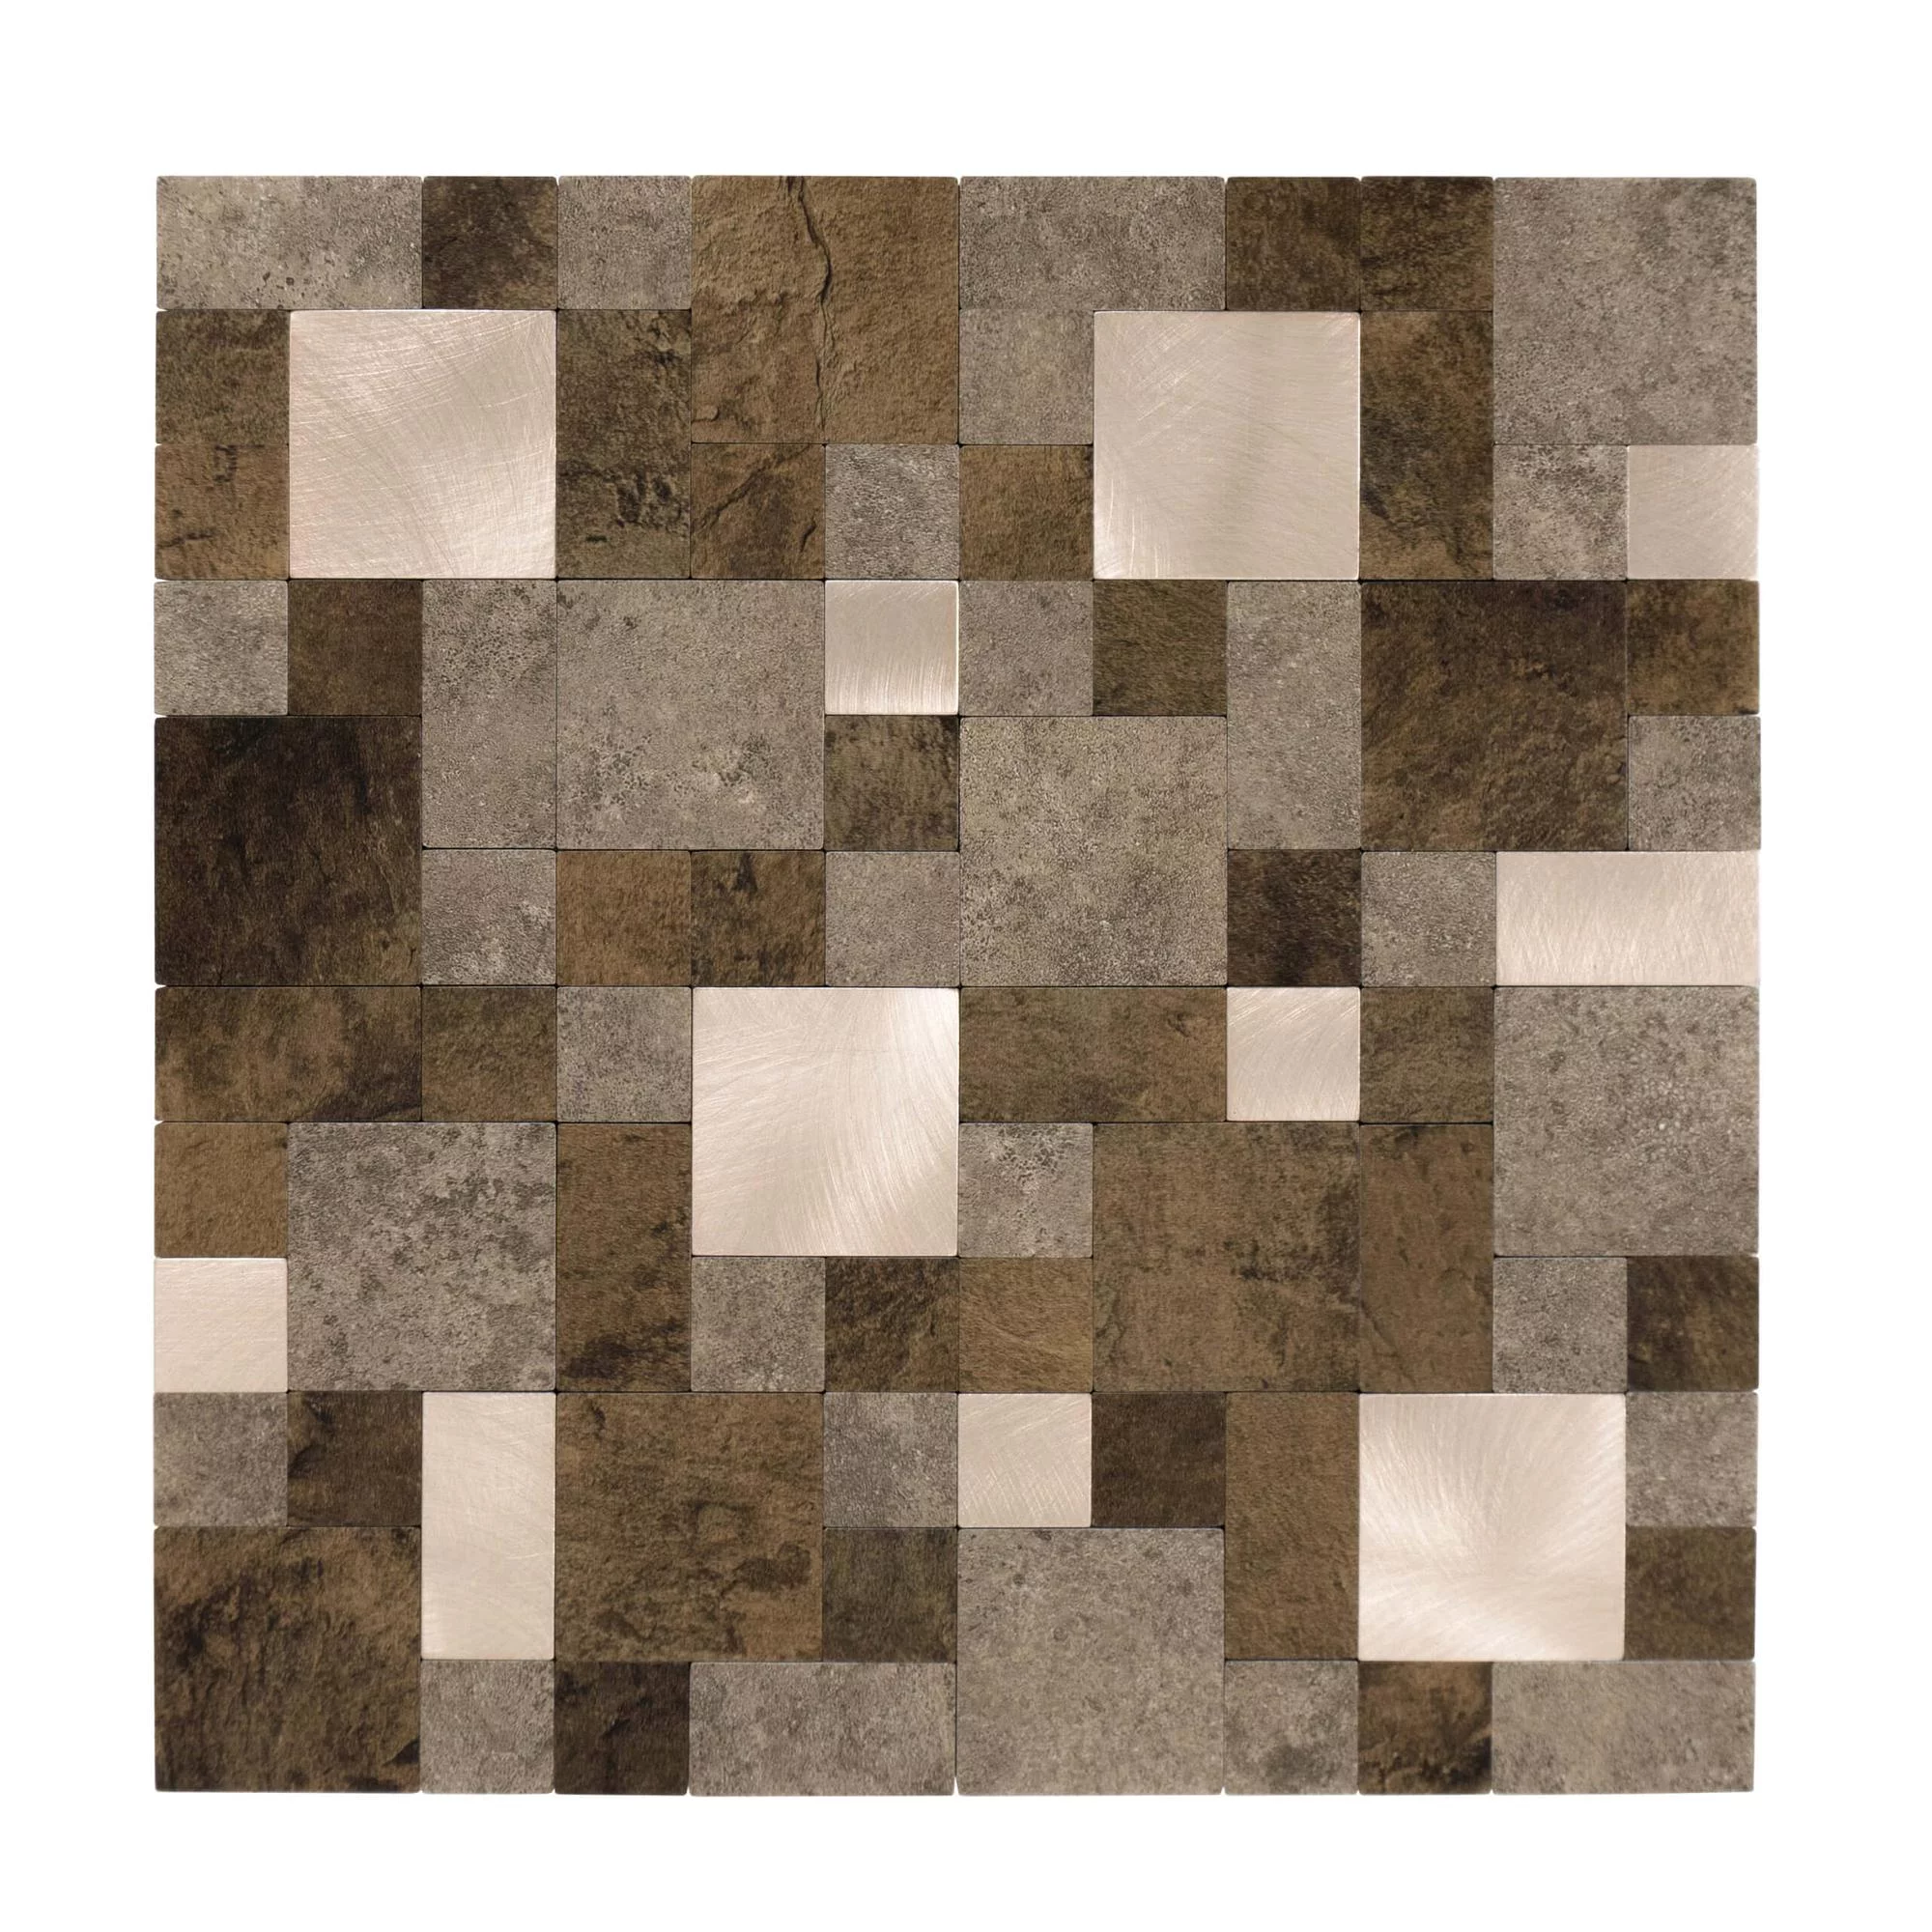 Zelfklevende steenlook tegels, vierkant/rechthoekig